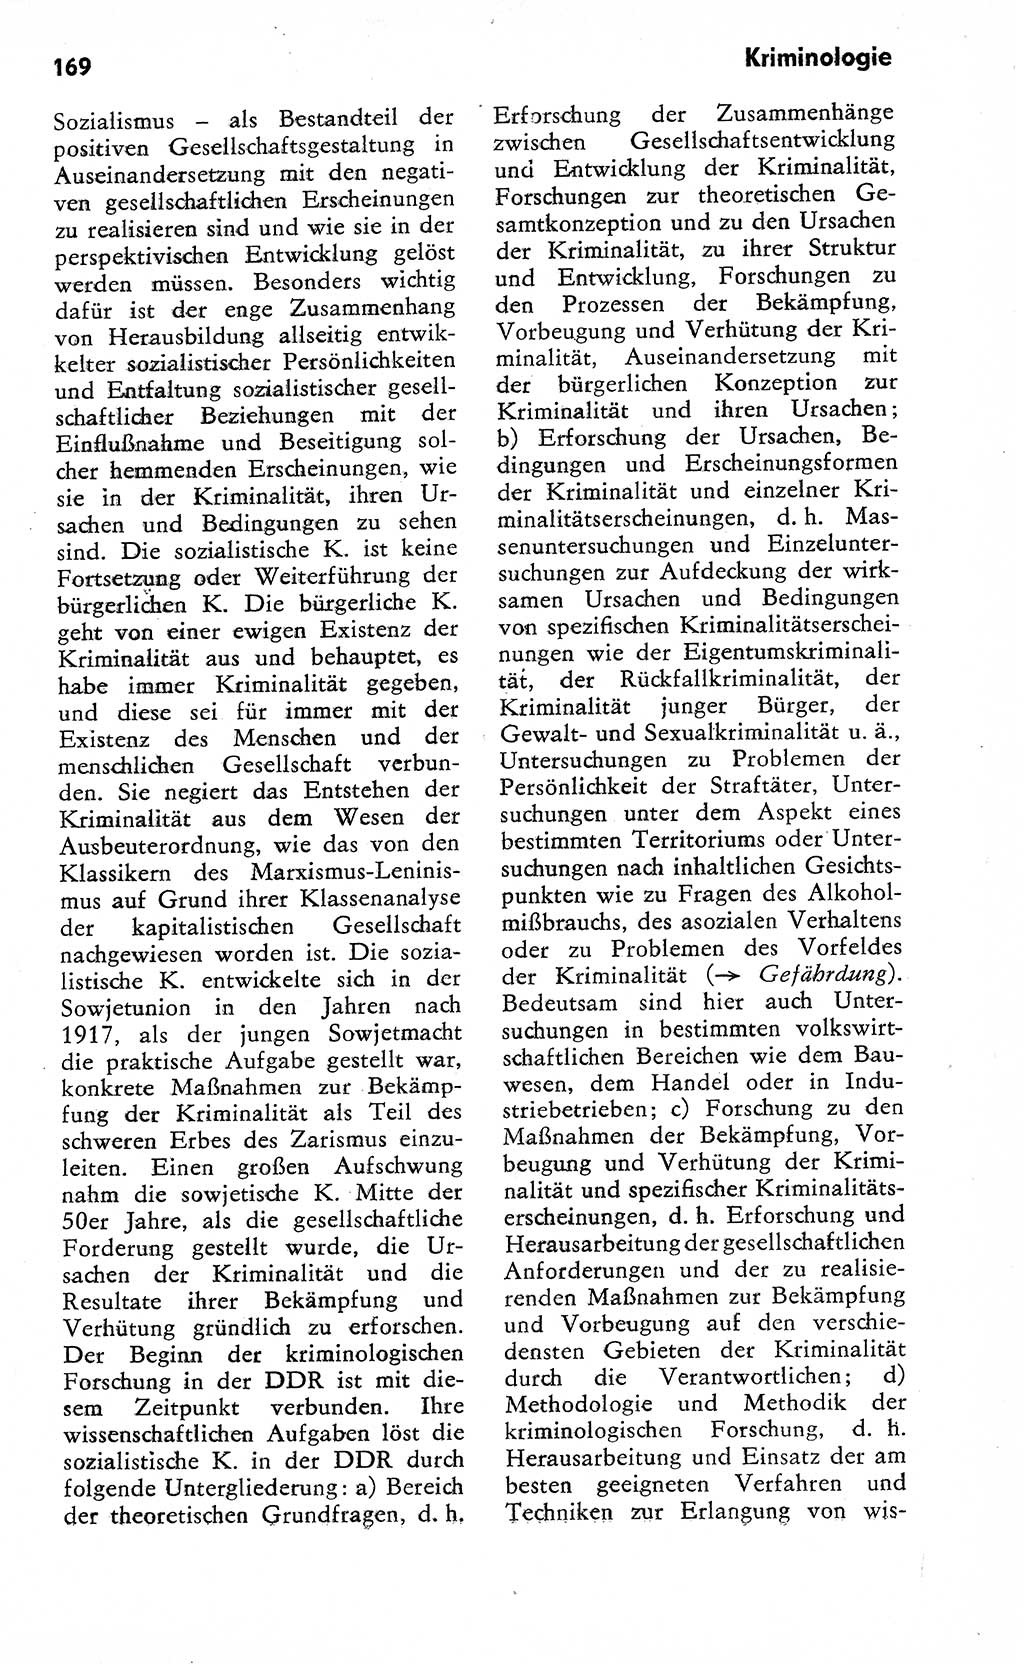 Wörterbuch zum sozialistischen Staat [Deutsche Demokratische Republik (DDR)] 1974, Seite 169 (Wb. soz. St. DDR 1974, S. 169)